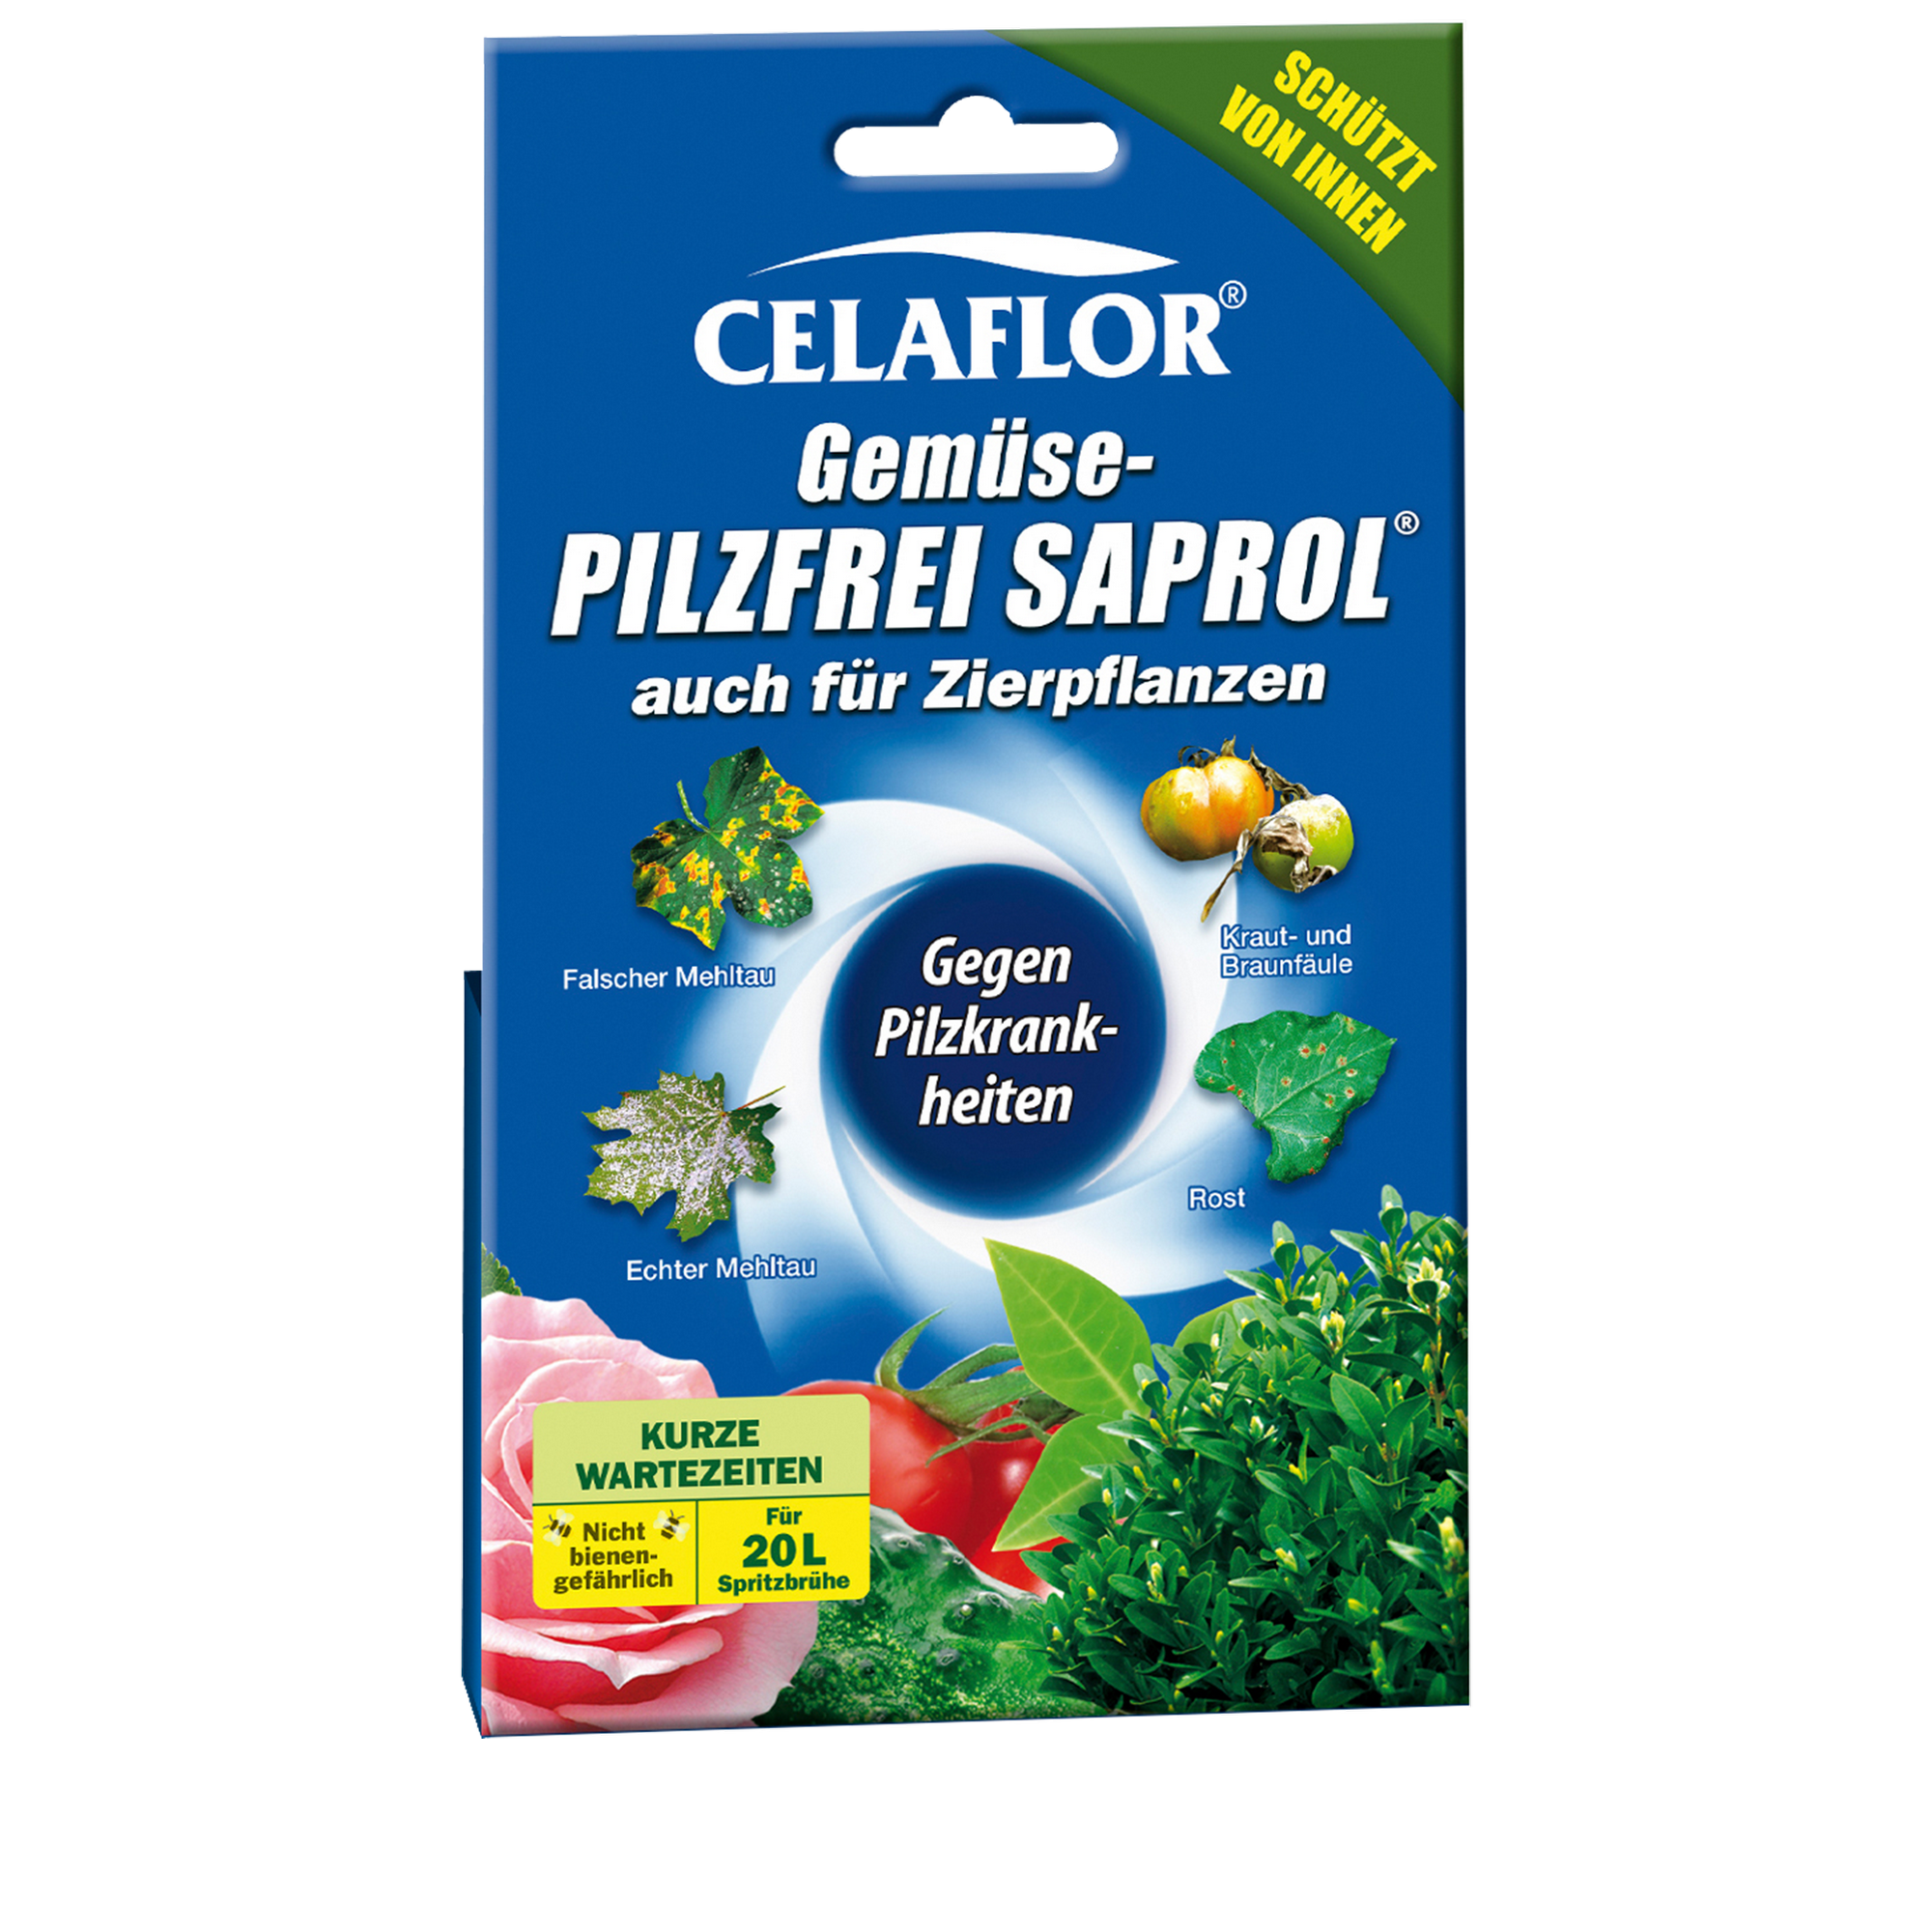 Gemüse-Pilzfrei Saprol® 4 x 4 ml + product picture